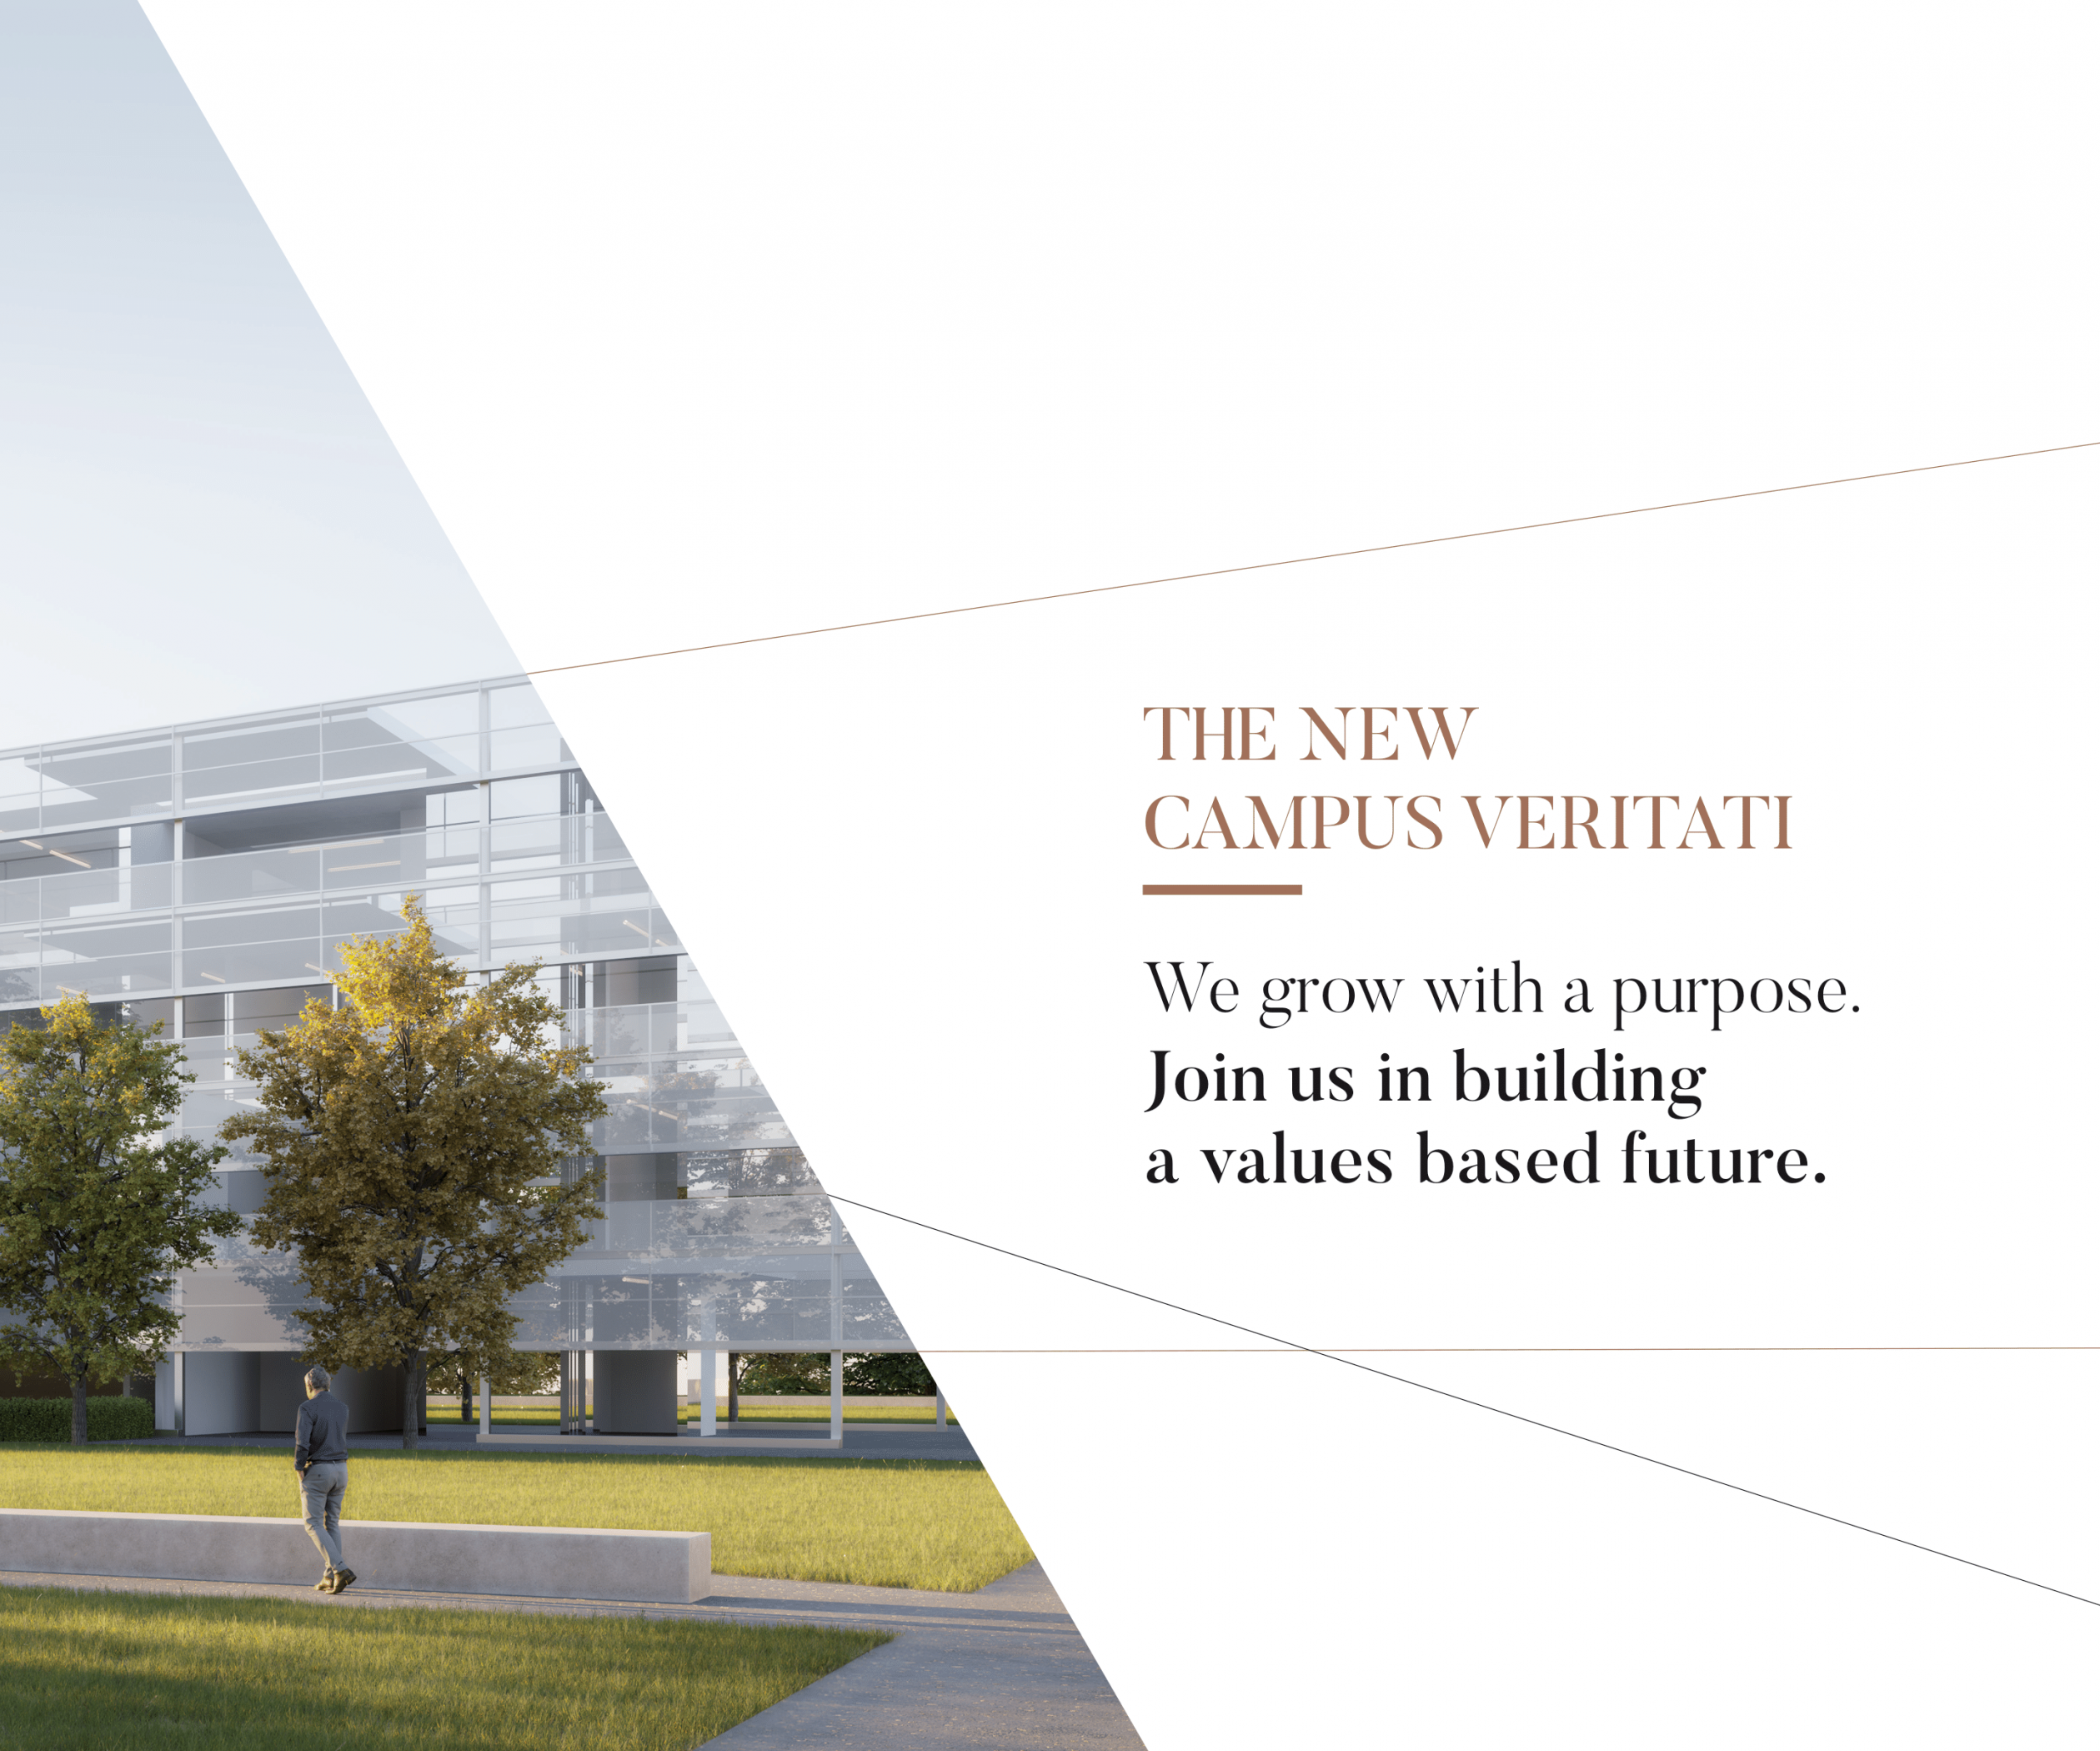 Campus Veritati